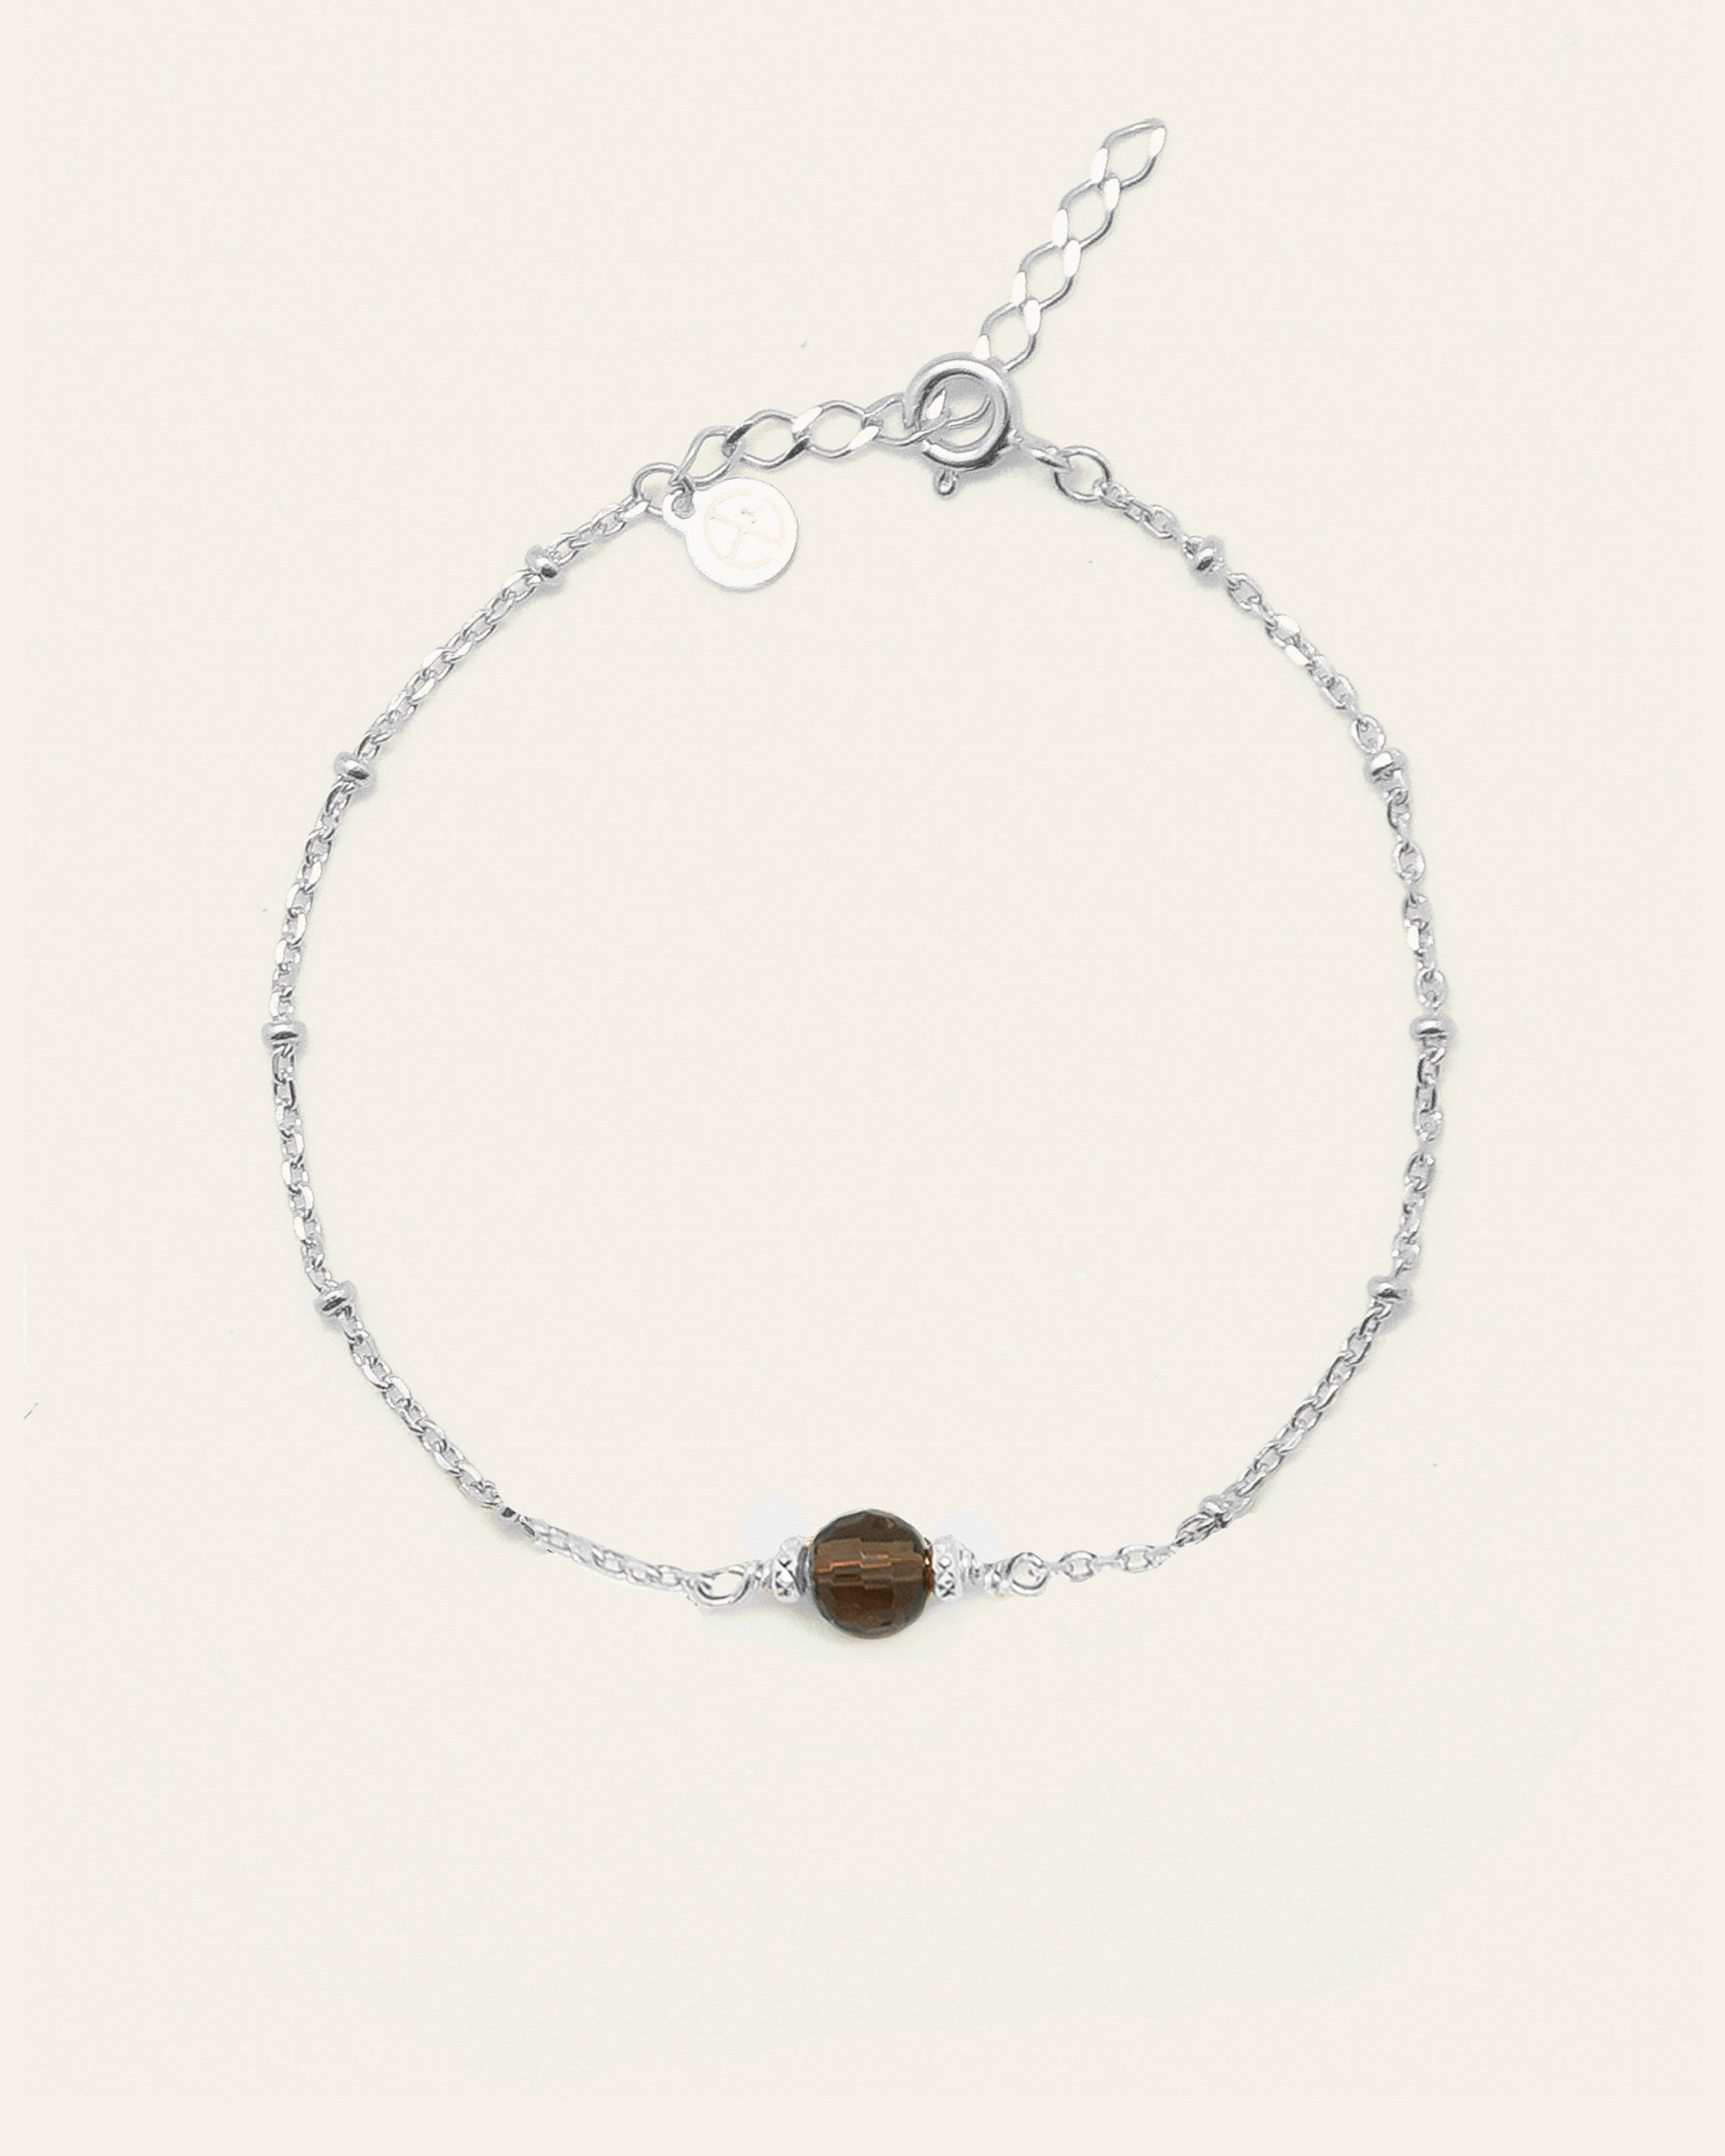 Bracelet en argent massif 925 composé d'une chaîne boule, d'une petite pierre de Quartz fumé ronde, et de deux petites billes en métal, made in France.